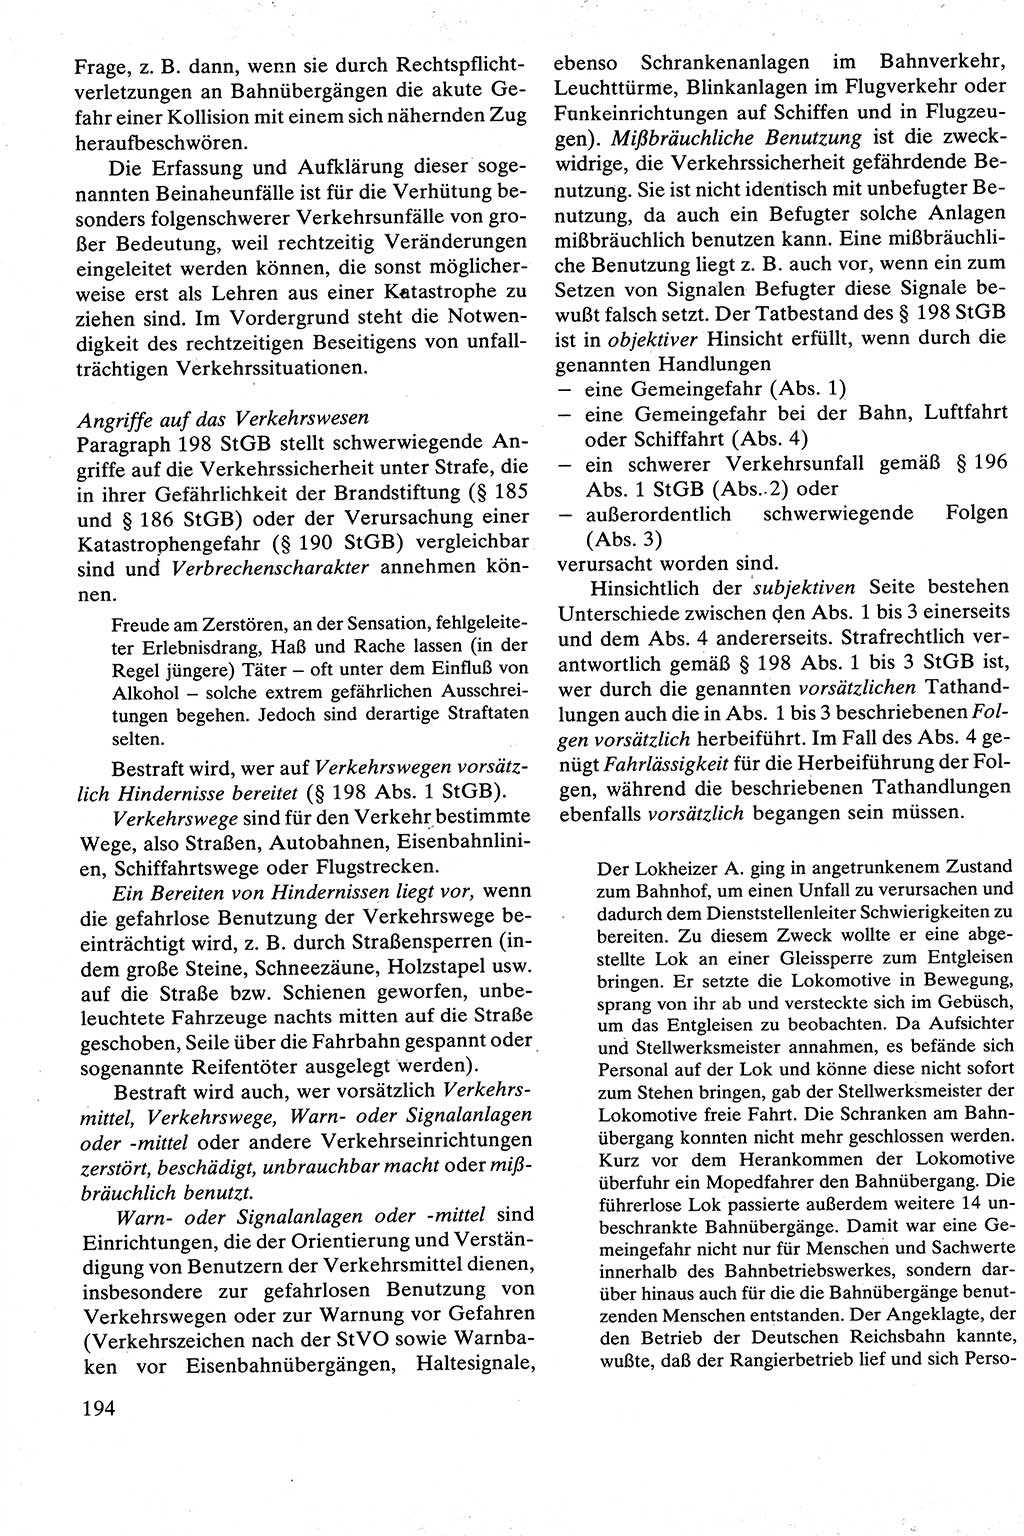 Strafrecht [Deutsche Demokratische Republik (DDR)], Besonderer Teil, Lehrbuch 1981, Seite 194 (Strafr. DDR BT Lb. 1981, S. 194)